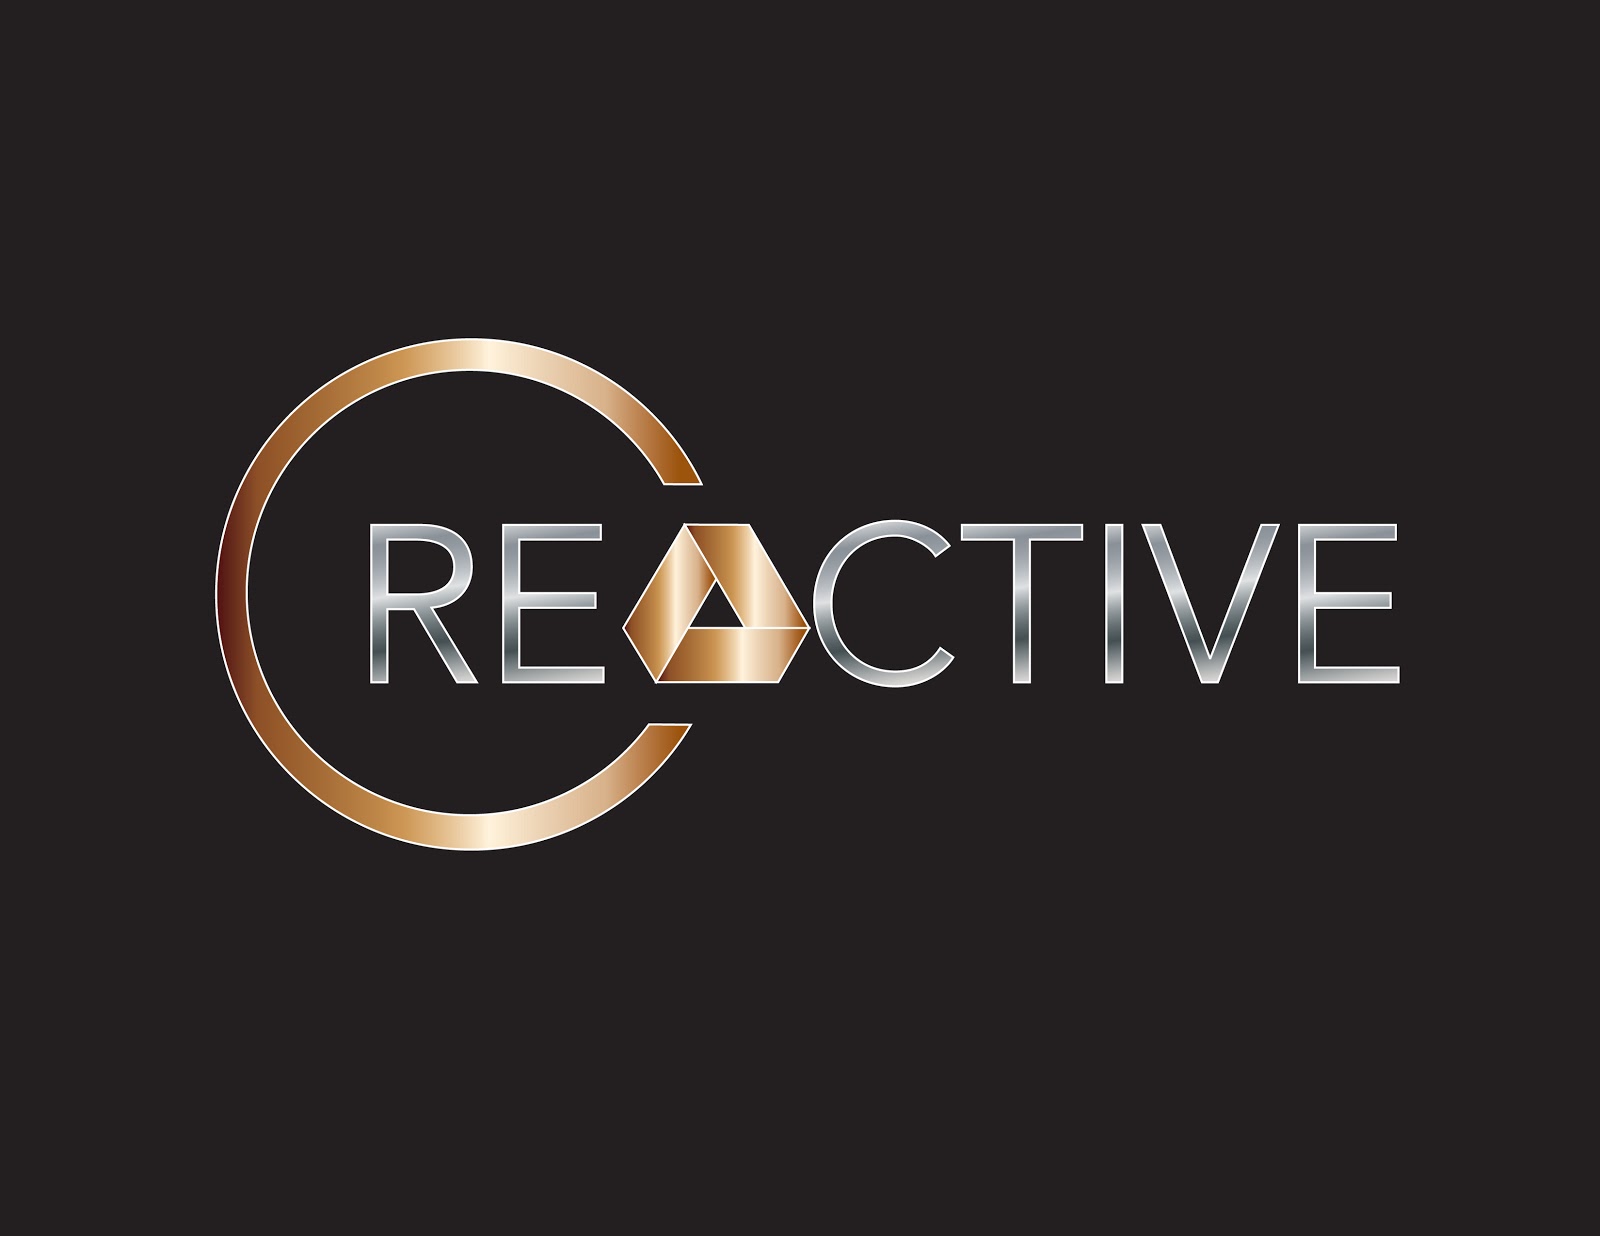 Creactive Inc's Logo